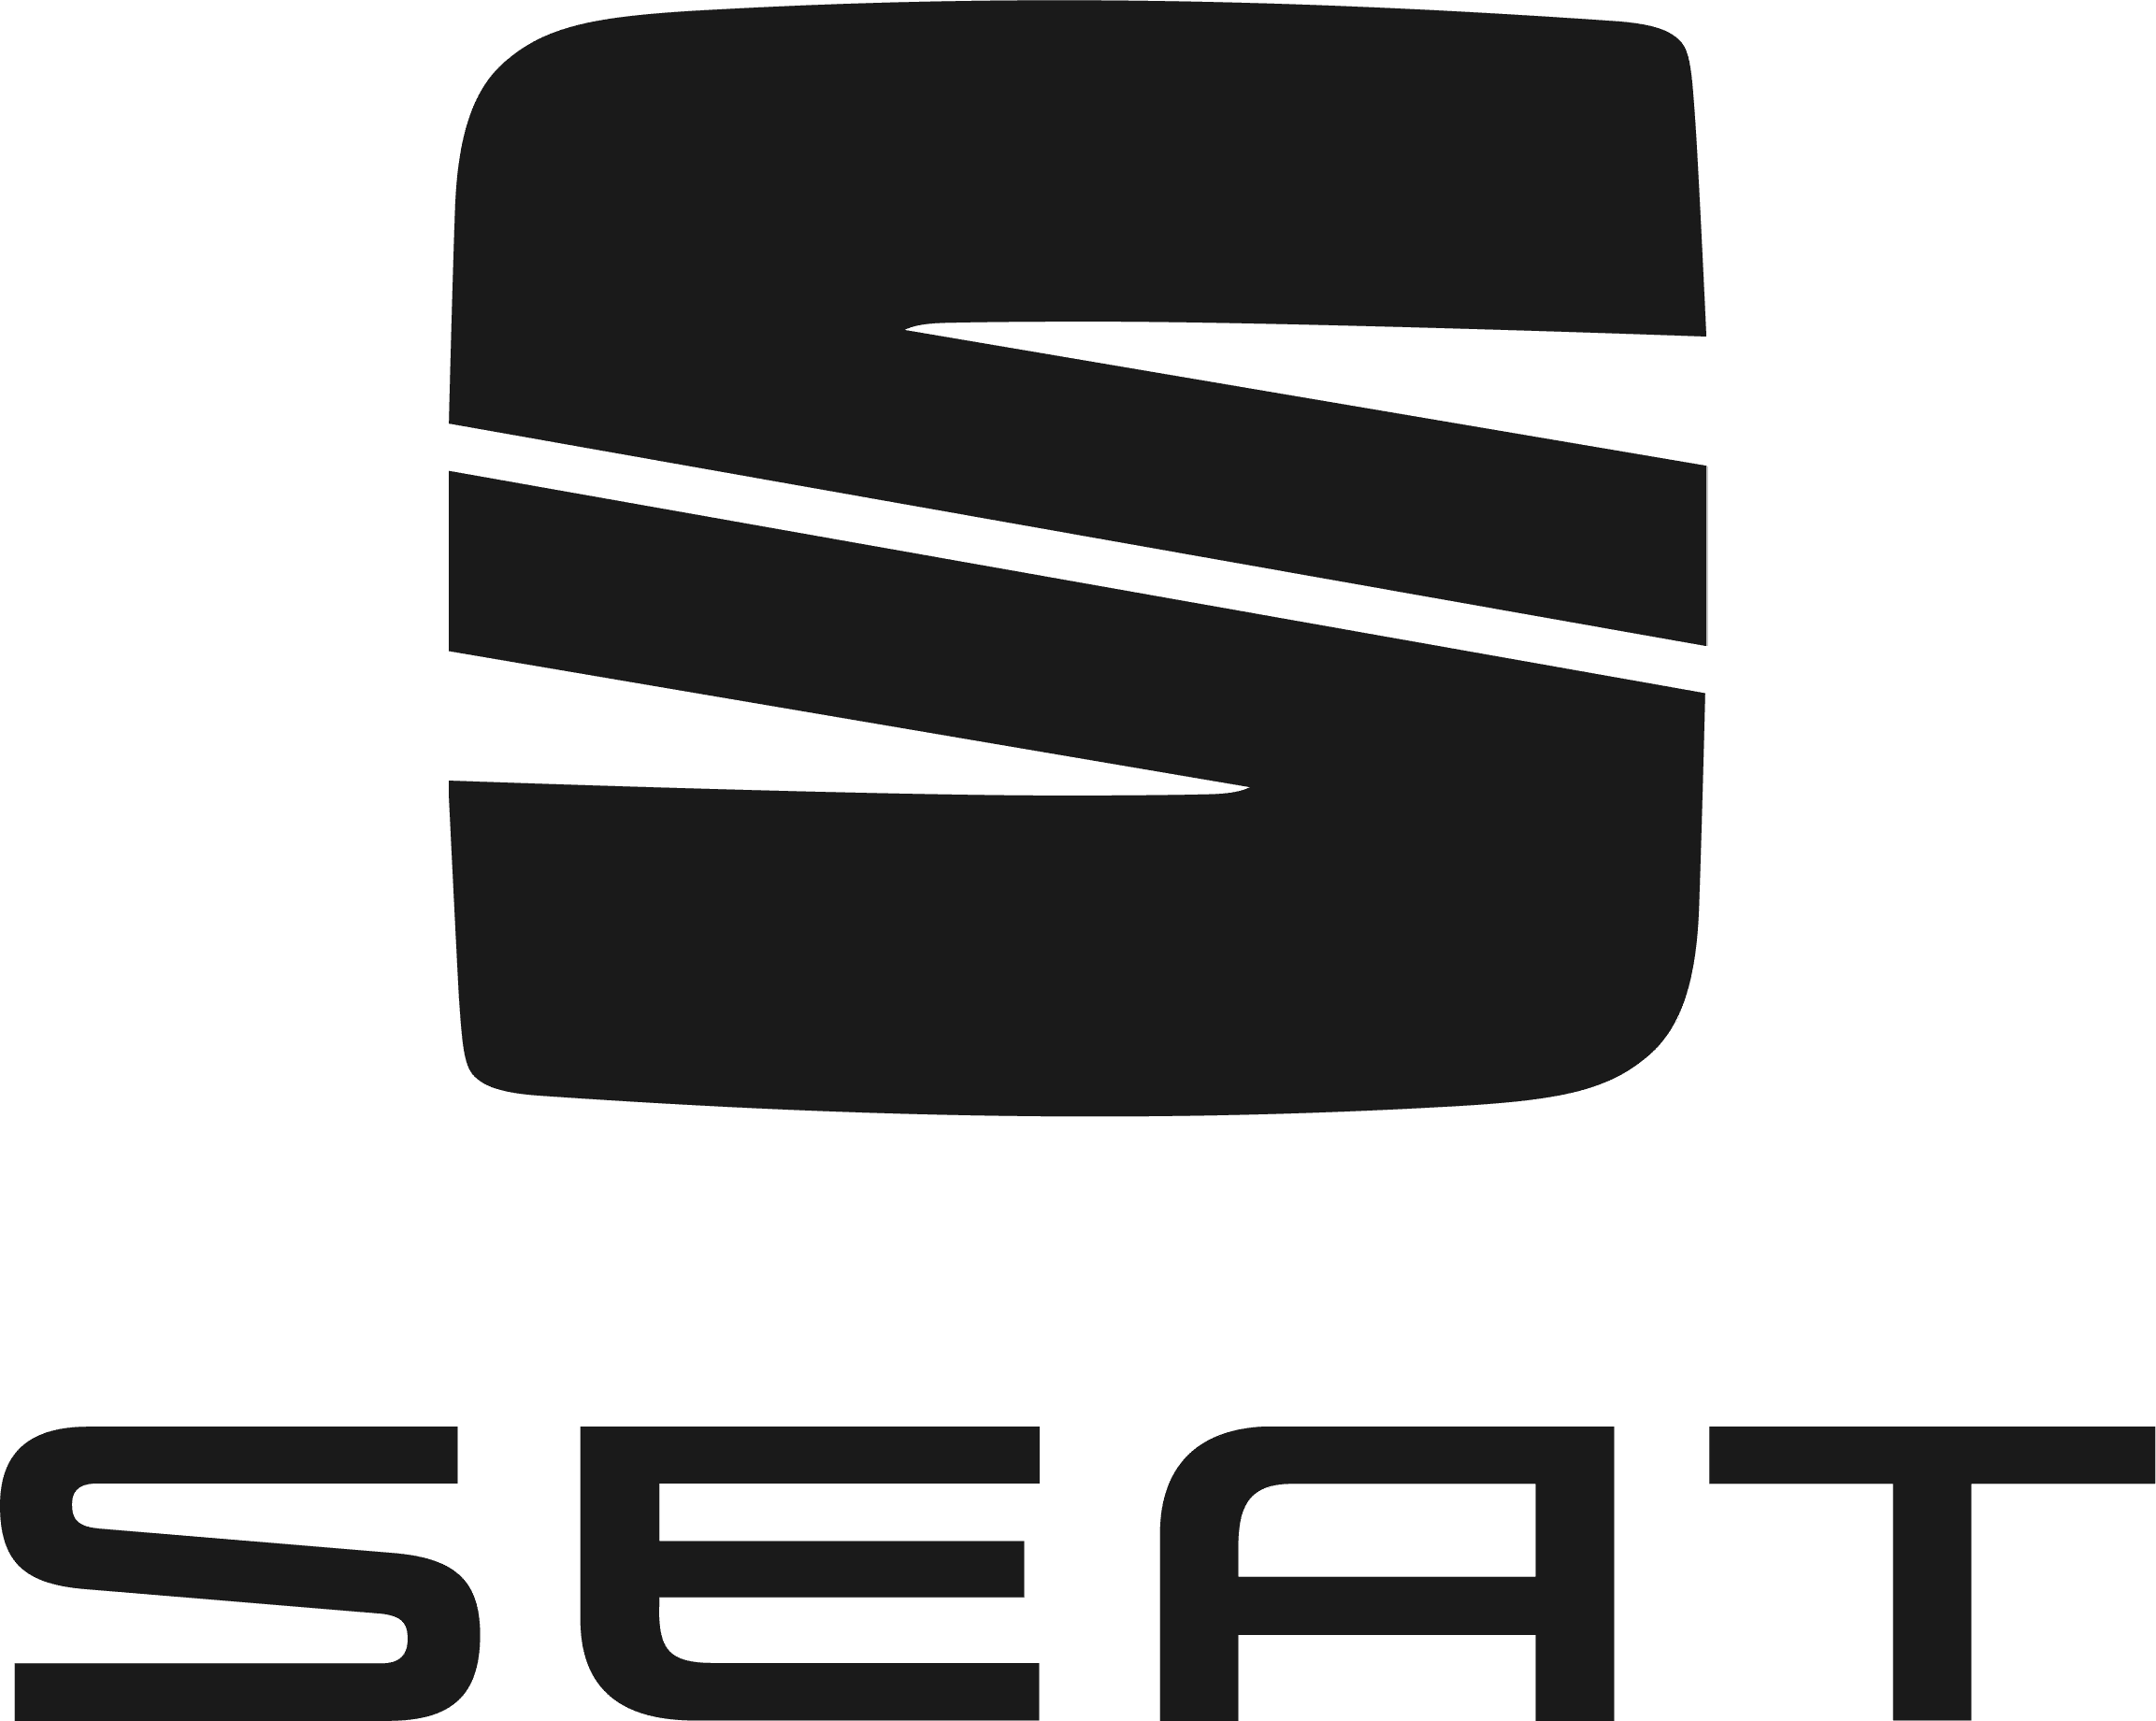 Marques voitures électriques - Beev - Seat